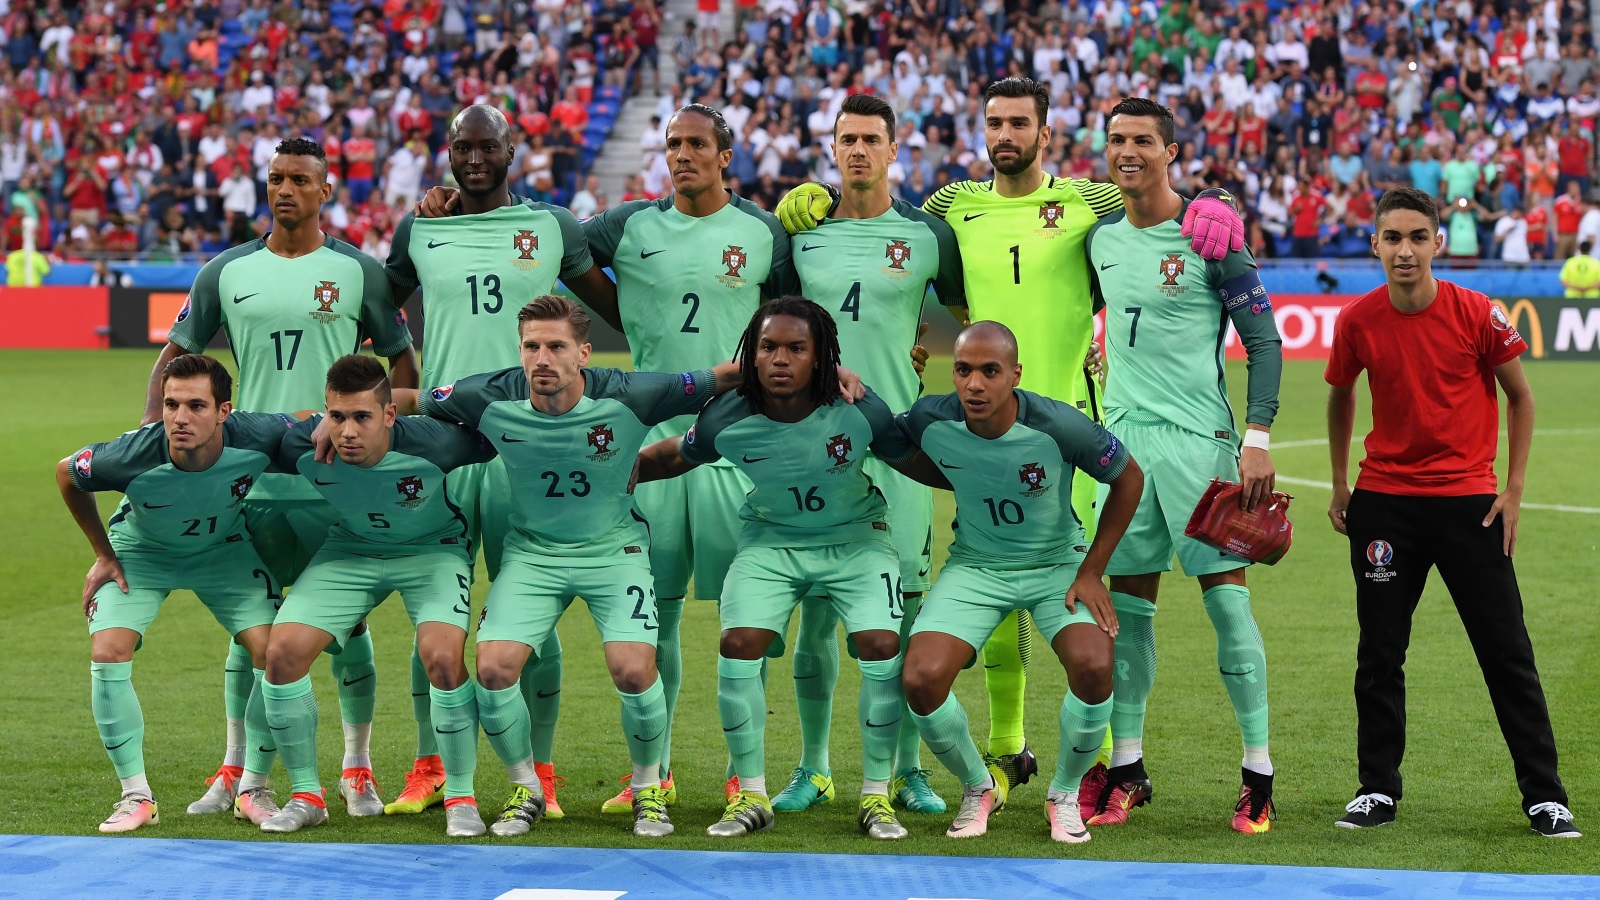 المنتخب البرتغالي: ناني بالرقم 17 وزميله ريناتو سانشيز بالرقم 16 (غيتي)